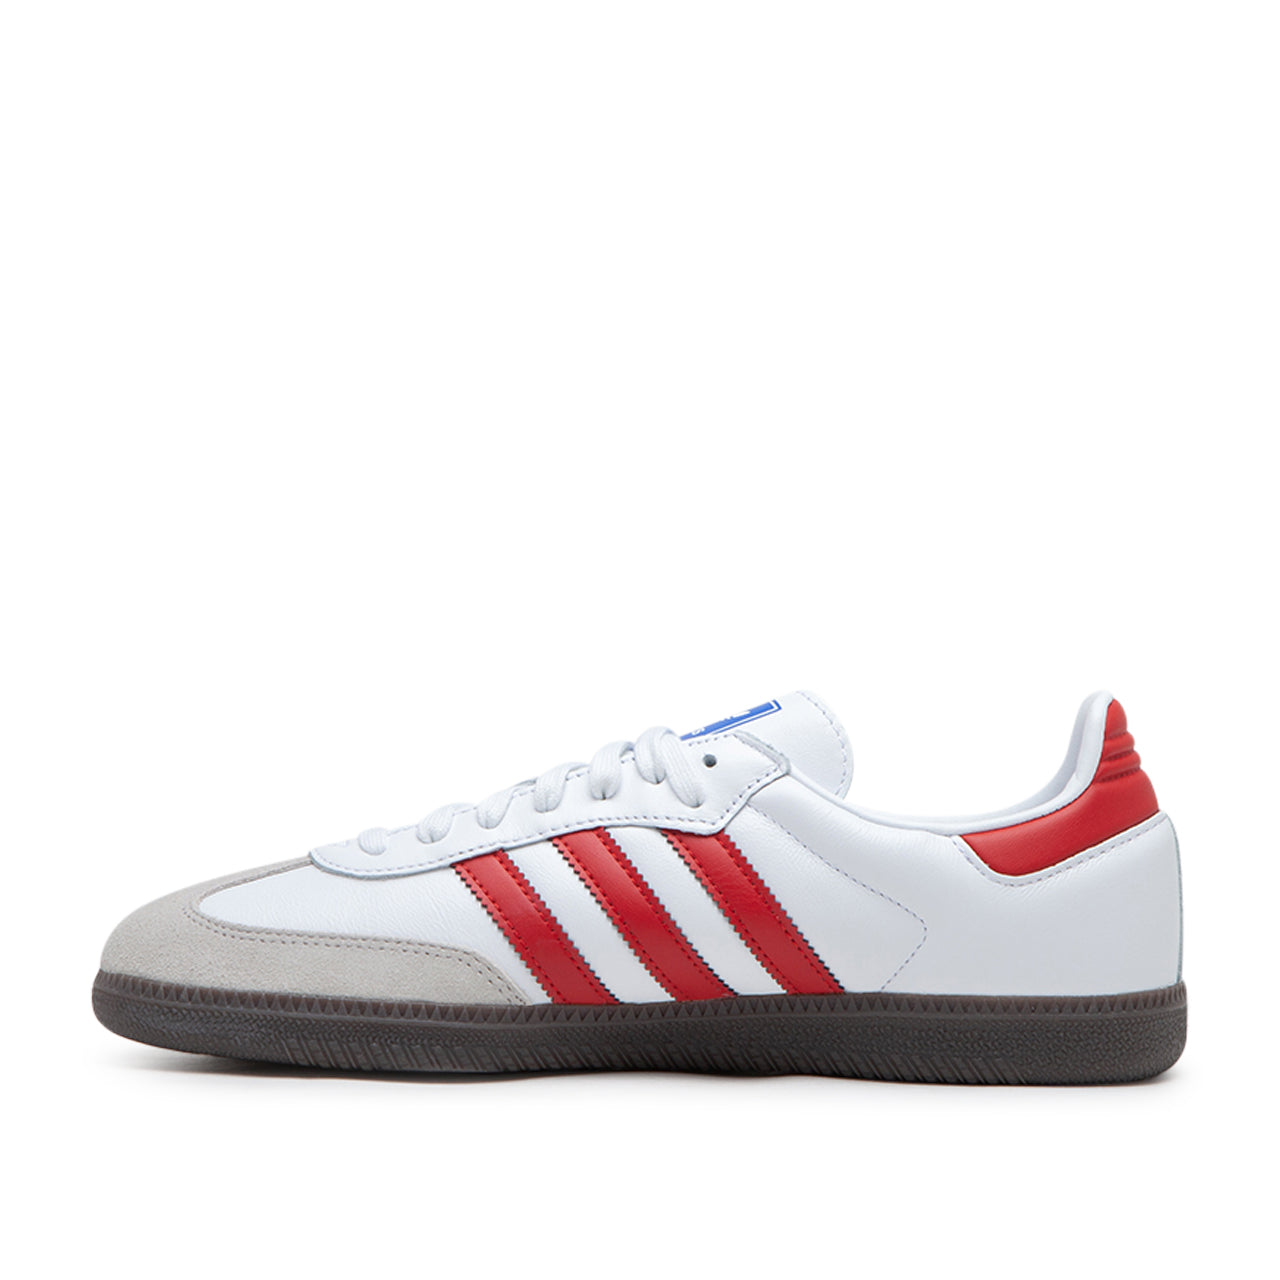 adidas Samba OG (White / Red / Grey) IG1025 - Allike Store